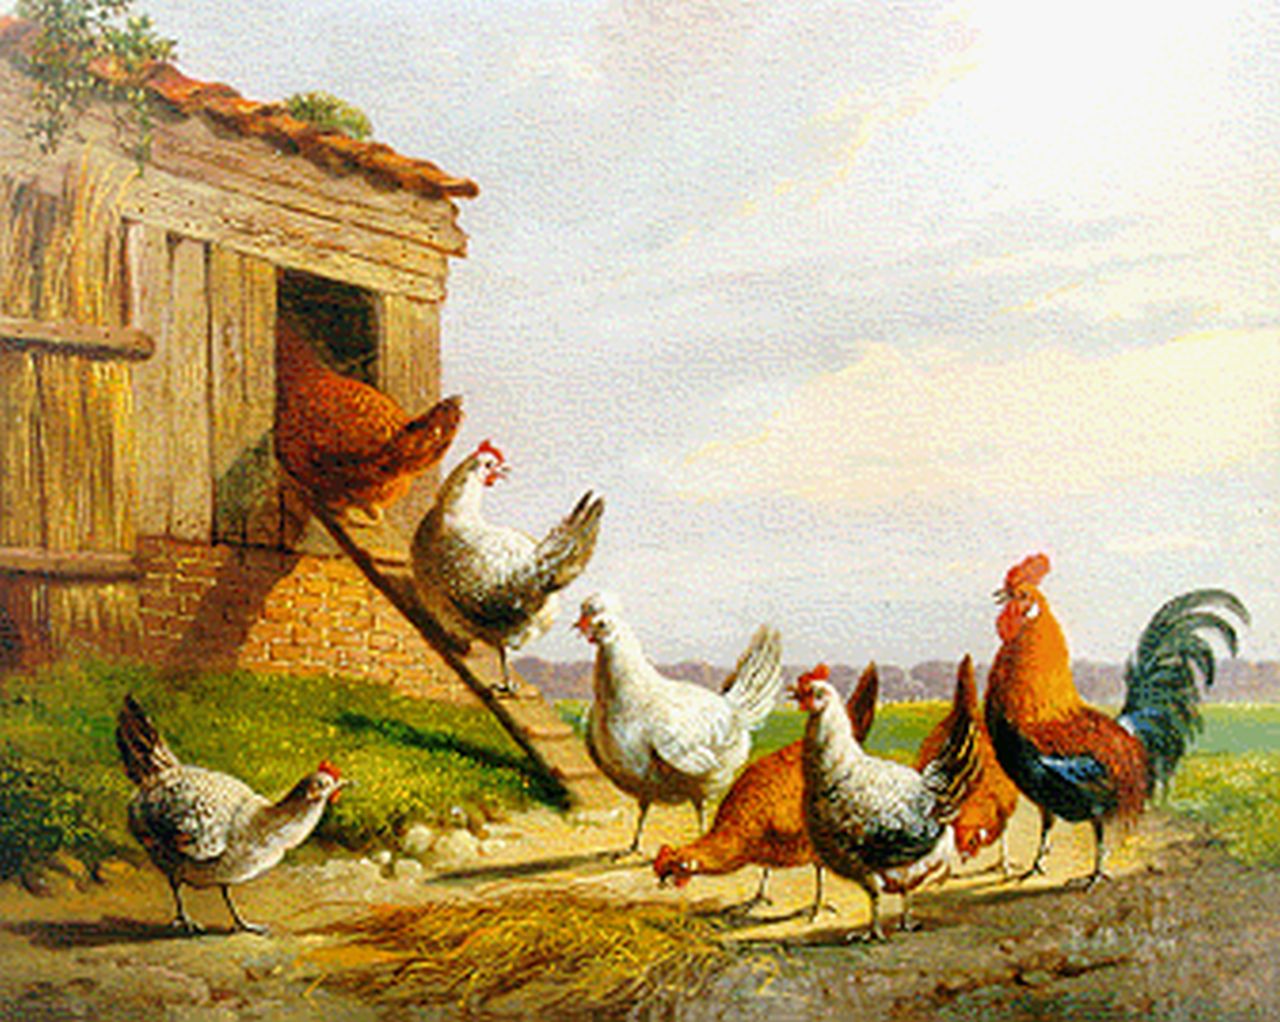 Verhoesen A.  | Albertus Verhoesen, Poultry in a landscape, Öl auf Holz 13,5 x 17,1 cm, signed l.r. und dated 1871